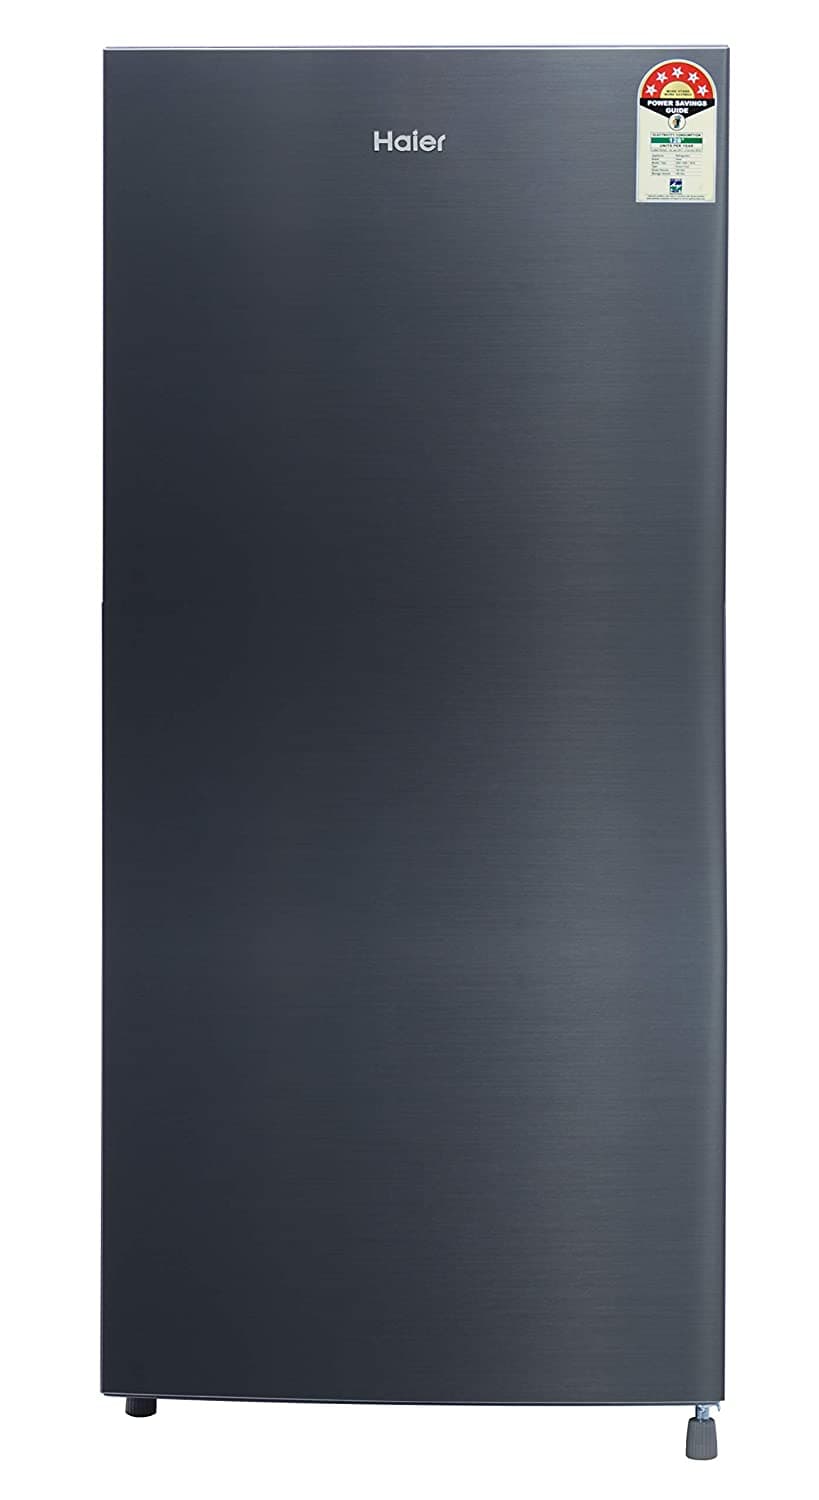 Haier HRD-1955PRG 195 Ltr Single Door Refrigerator